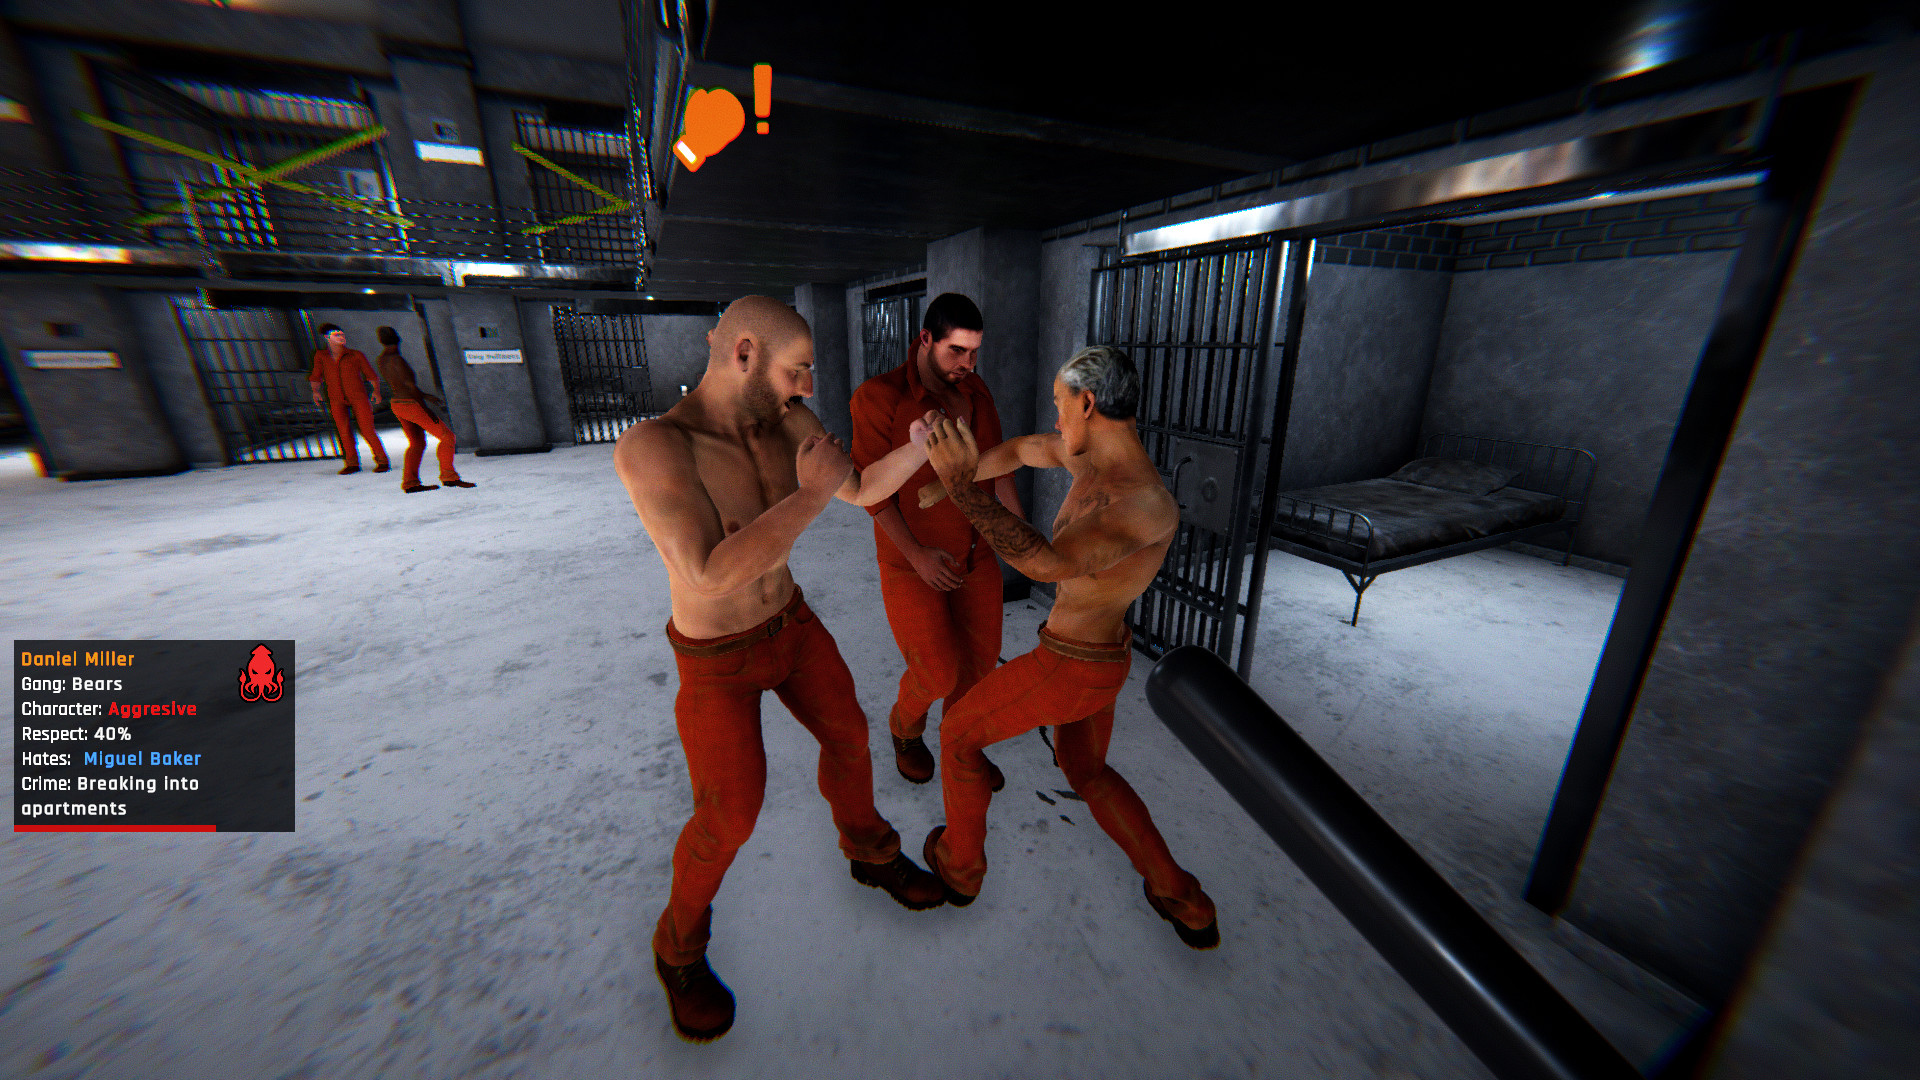 Escape Prison Simulator::Appstore for Android